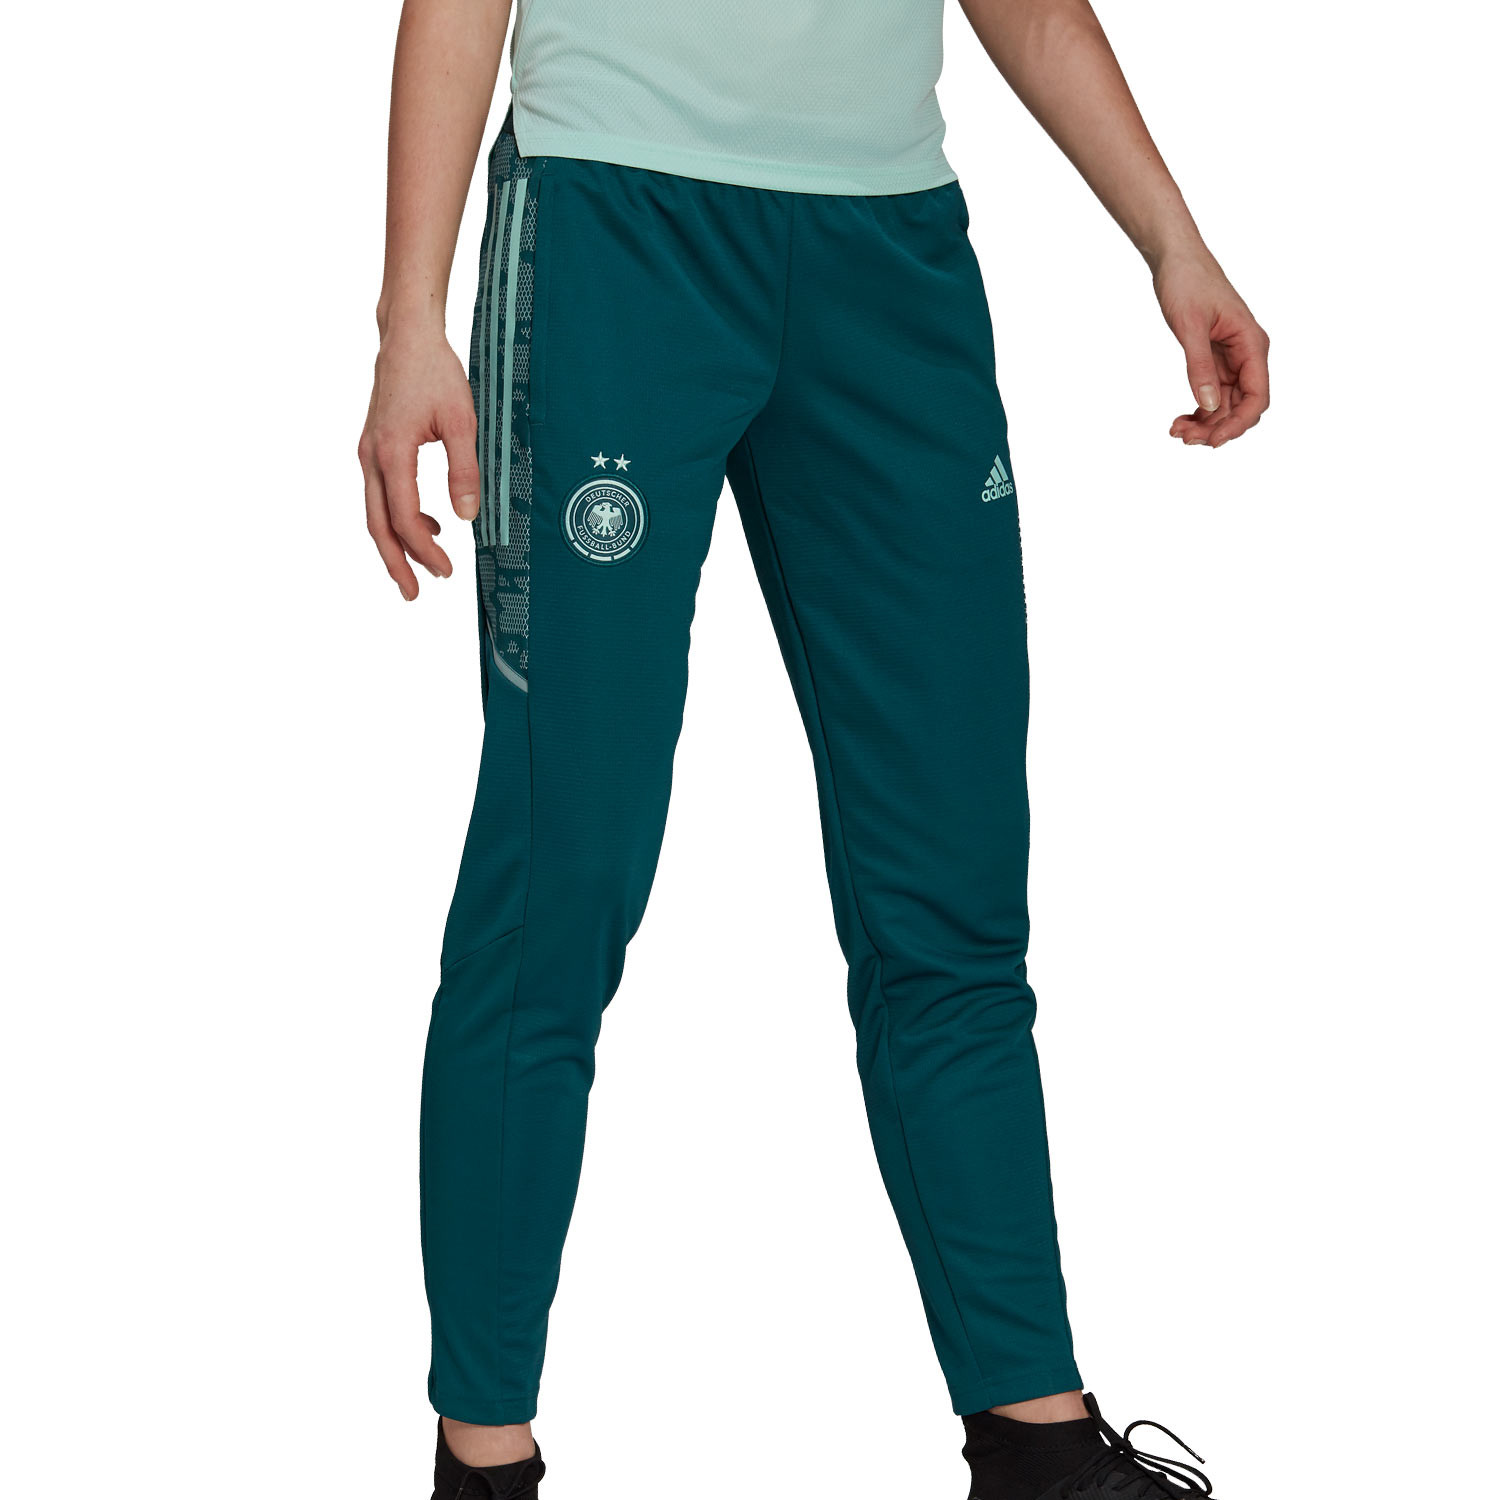 Pantalon Adidas Track Verde Mujer